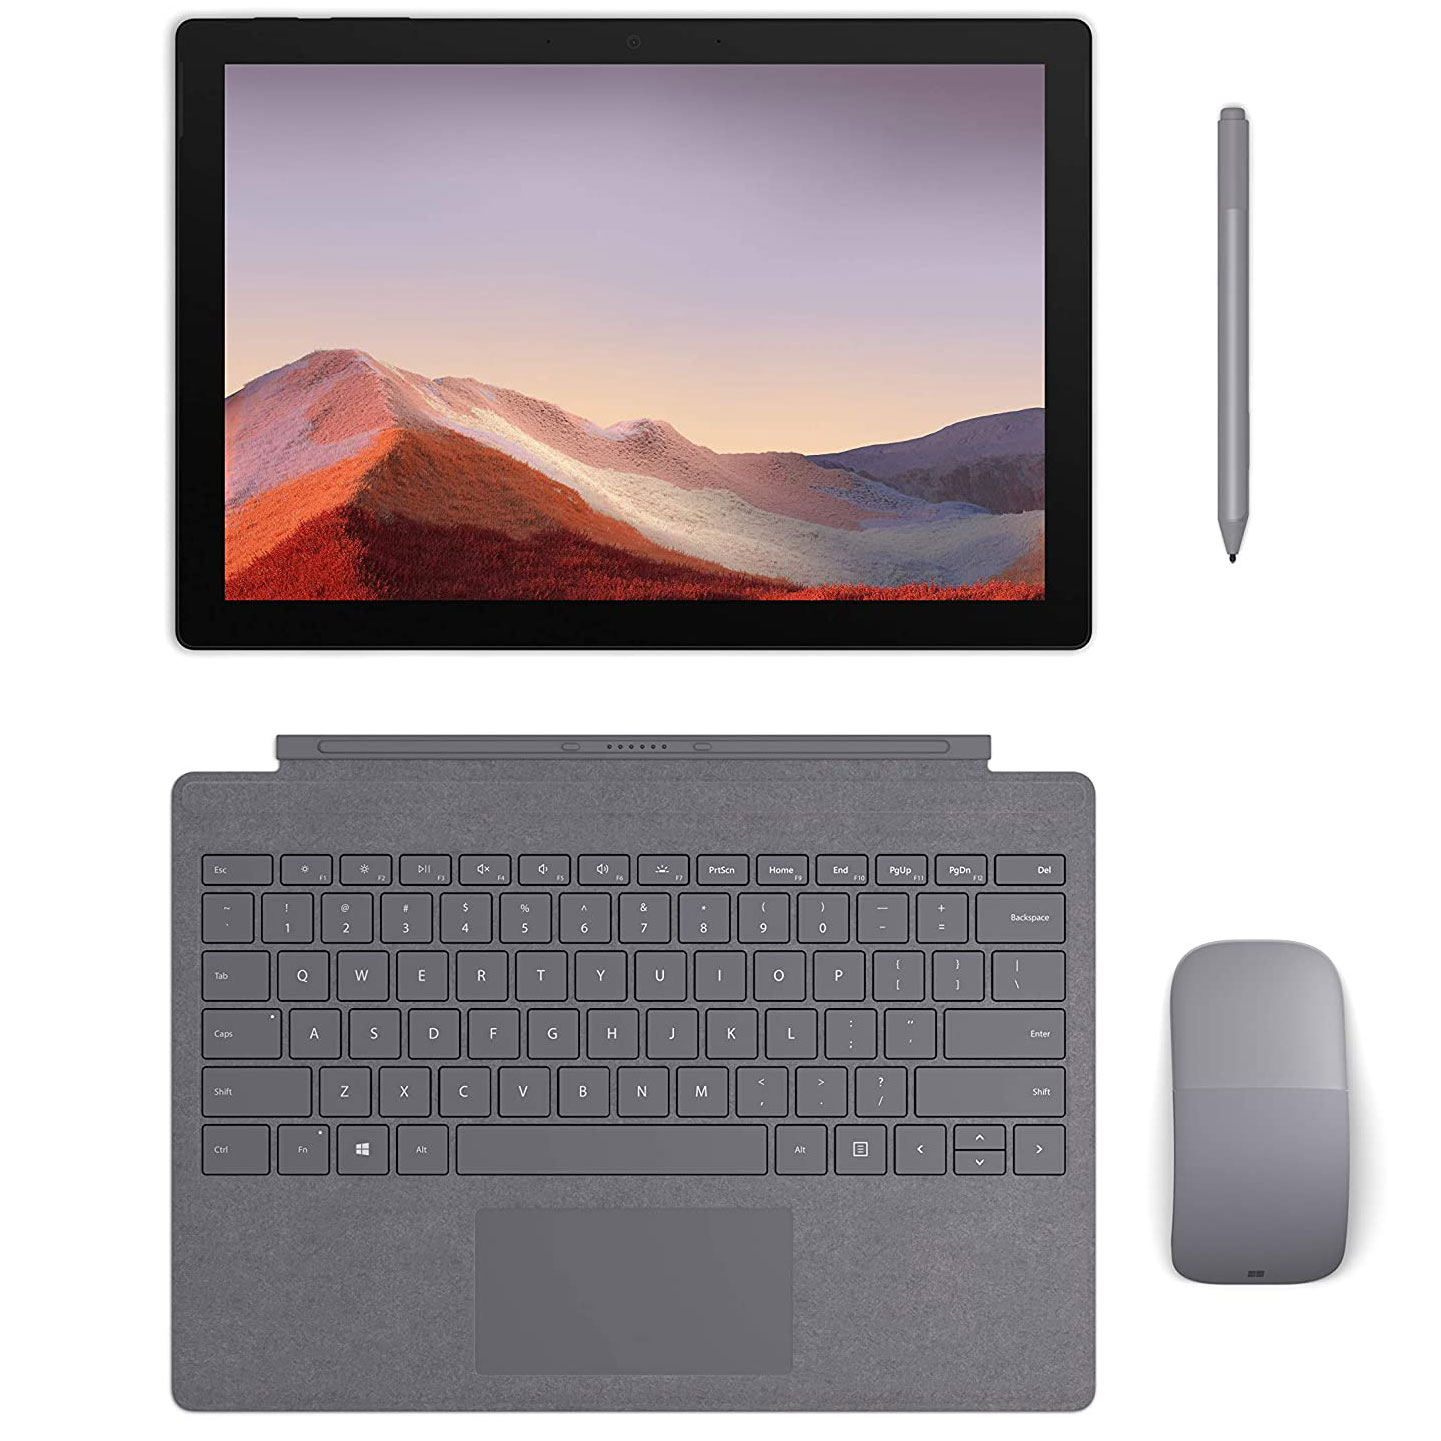 Microsoft Surface Pro 6 Core i7, Ram 8GB, SSD 256GB Like New